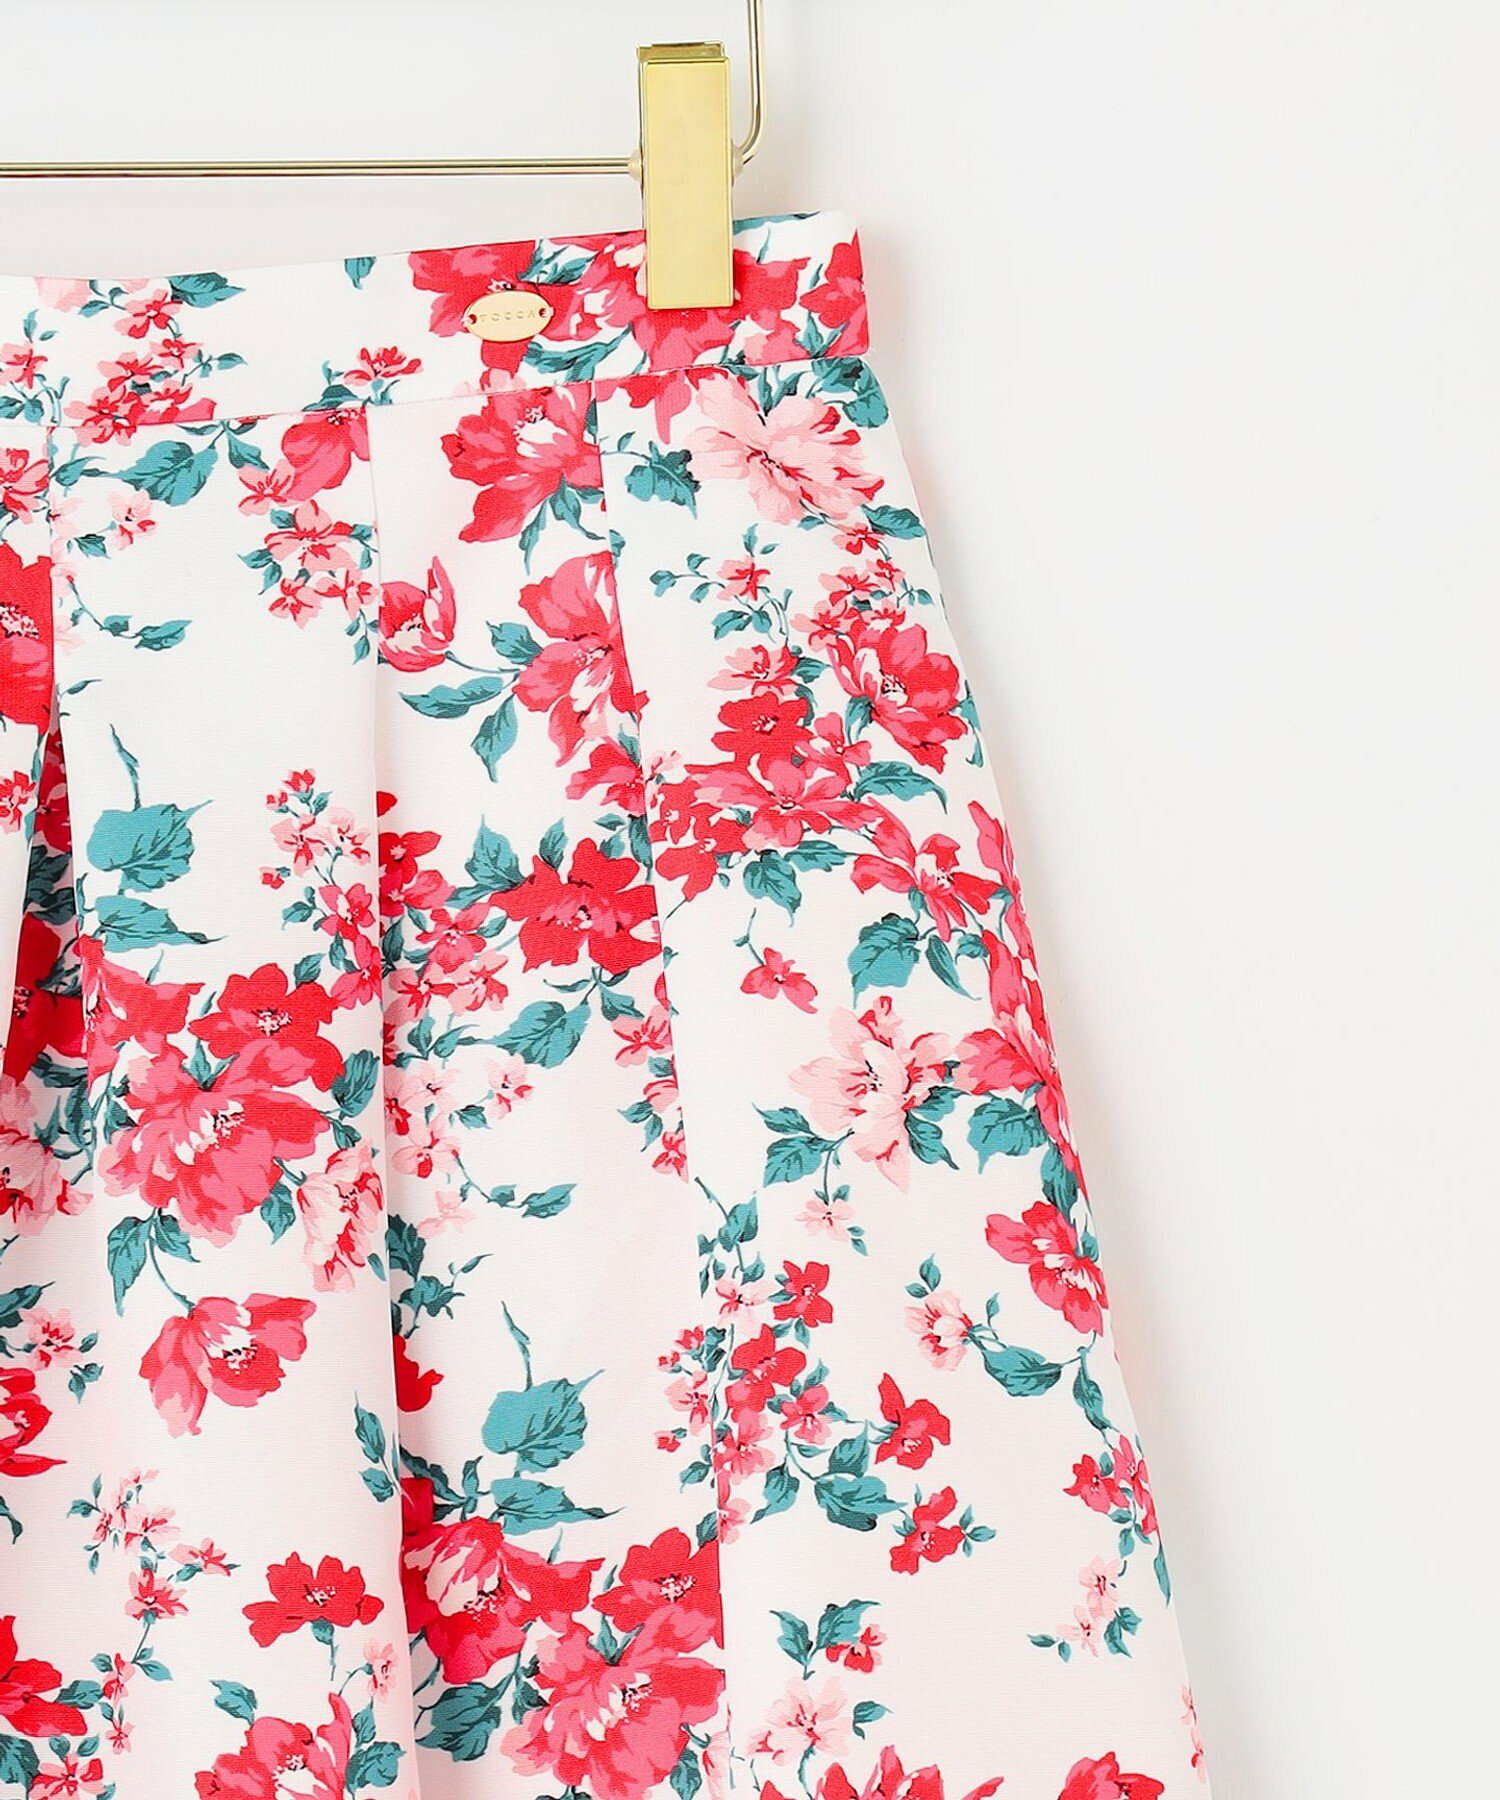 【洗える!】WANDERING FLOWER スカート